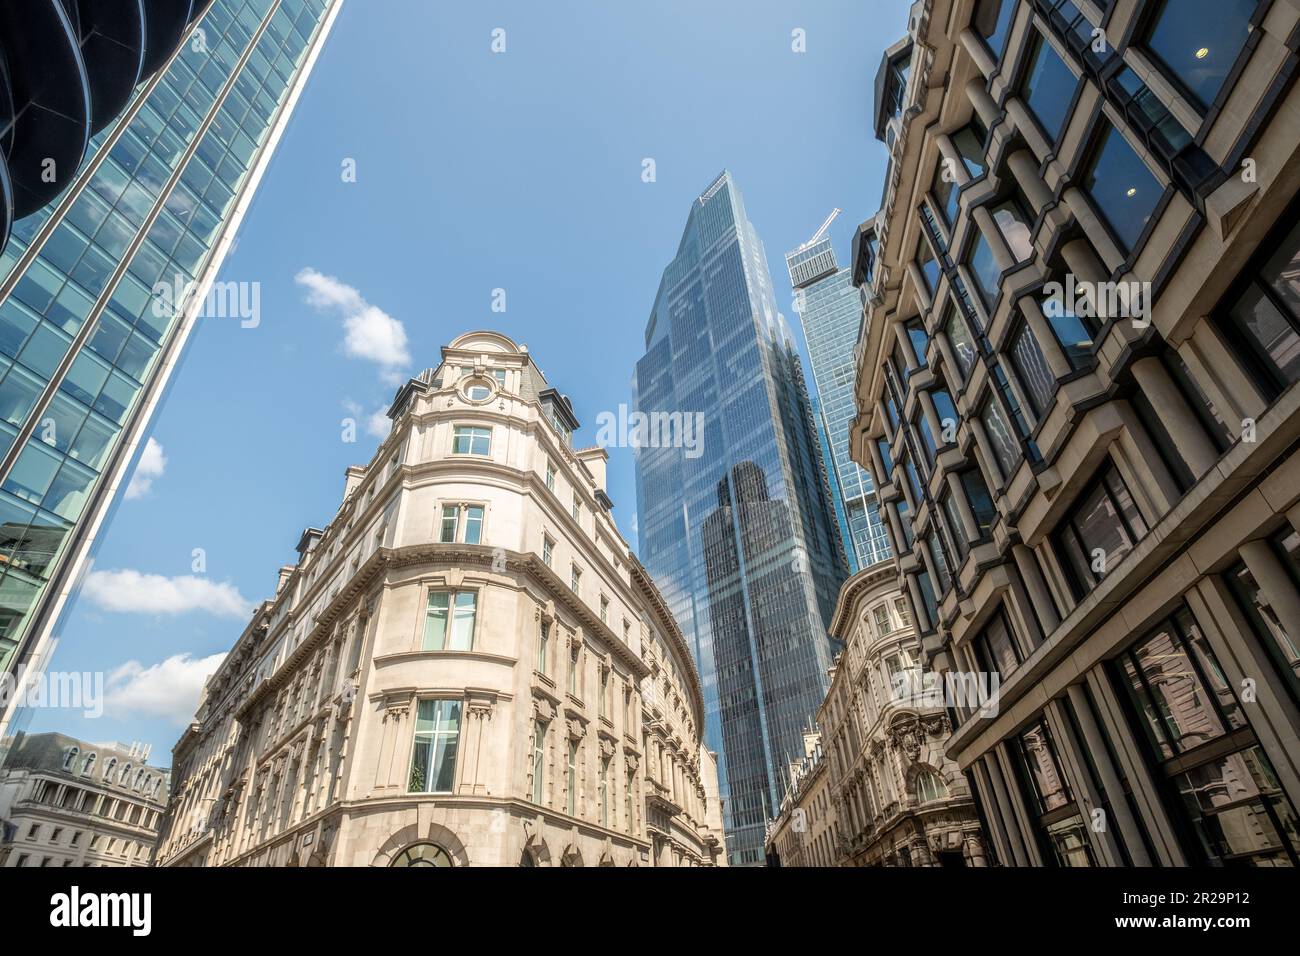 Londres - vue vers le haut des bâtiments financiers modernes et anciens de la ville de Londres Banque D'Images